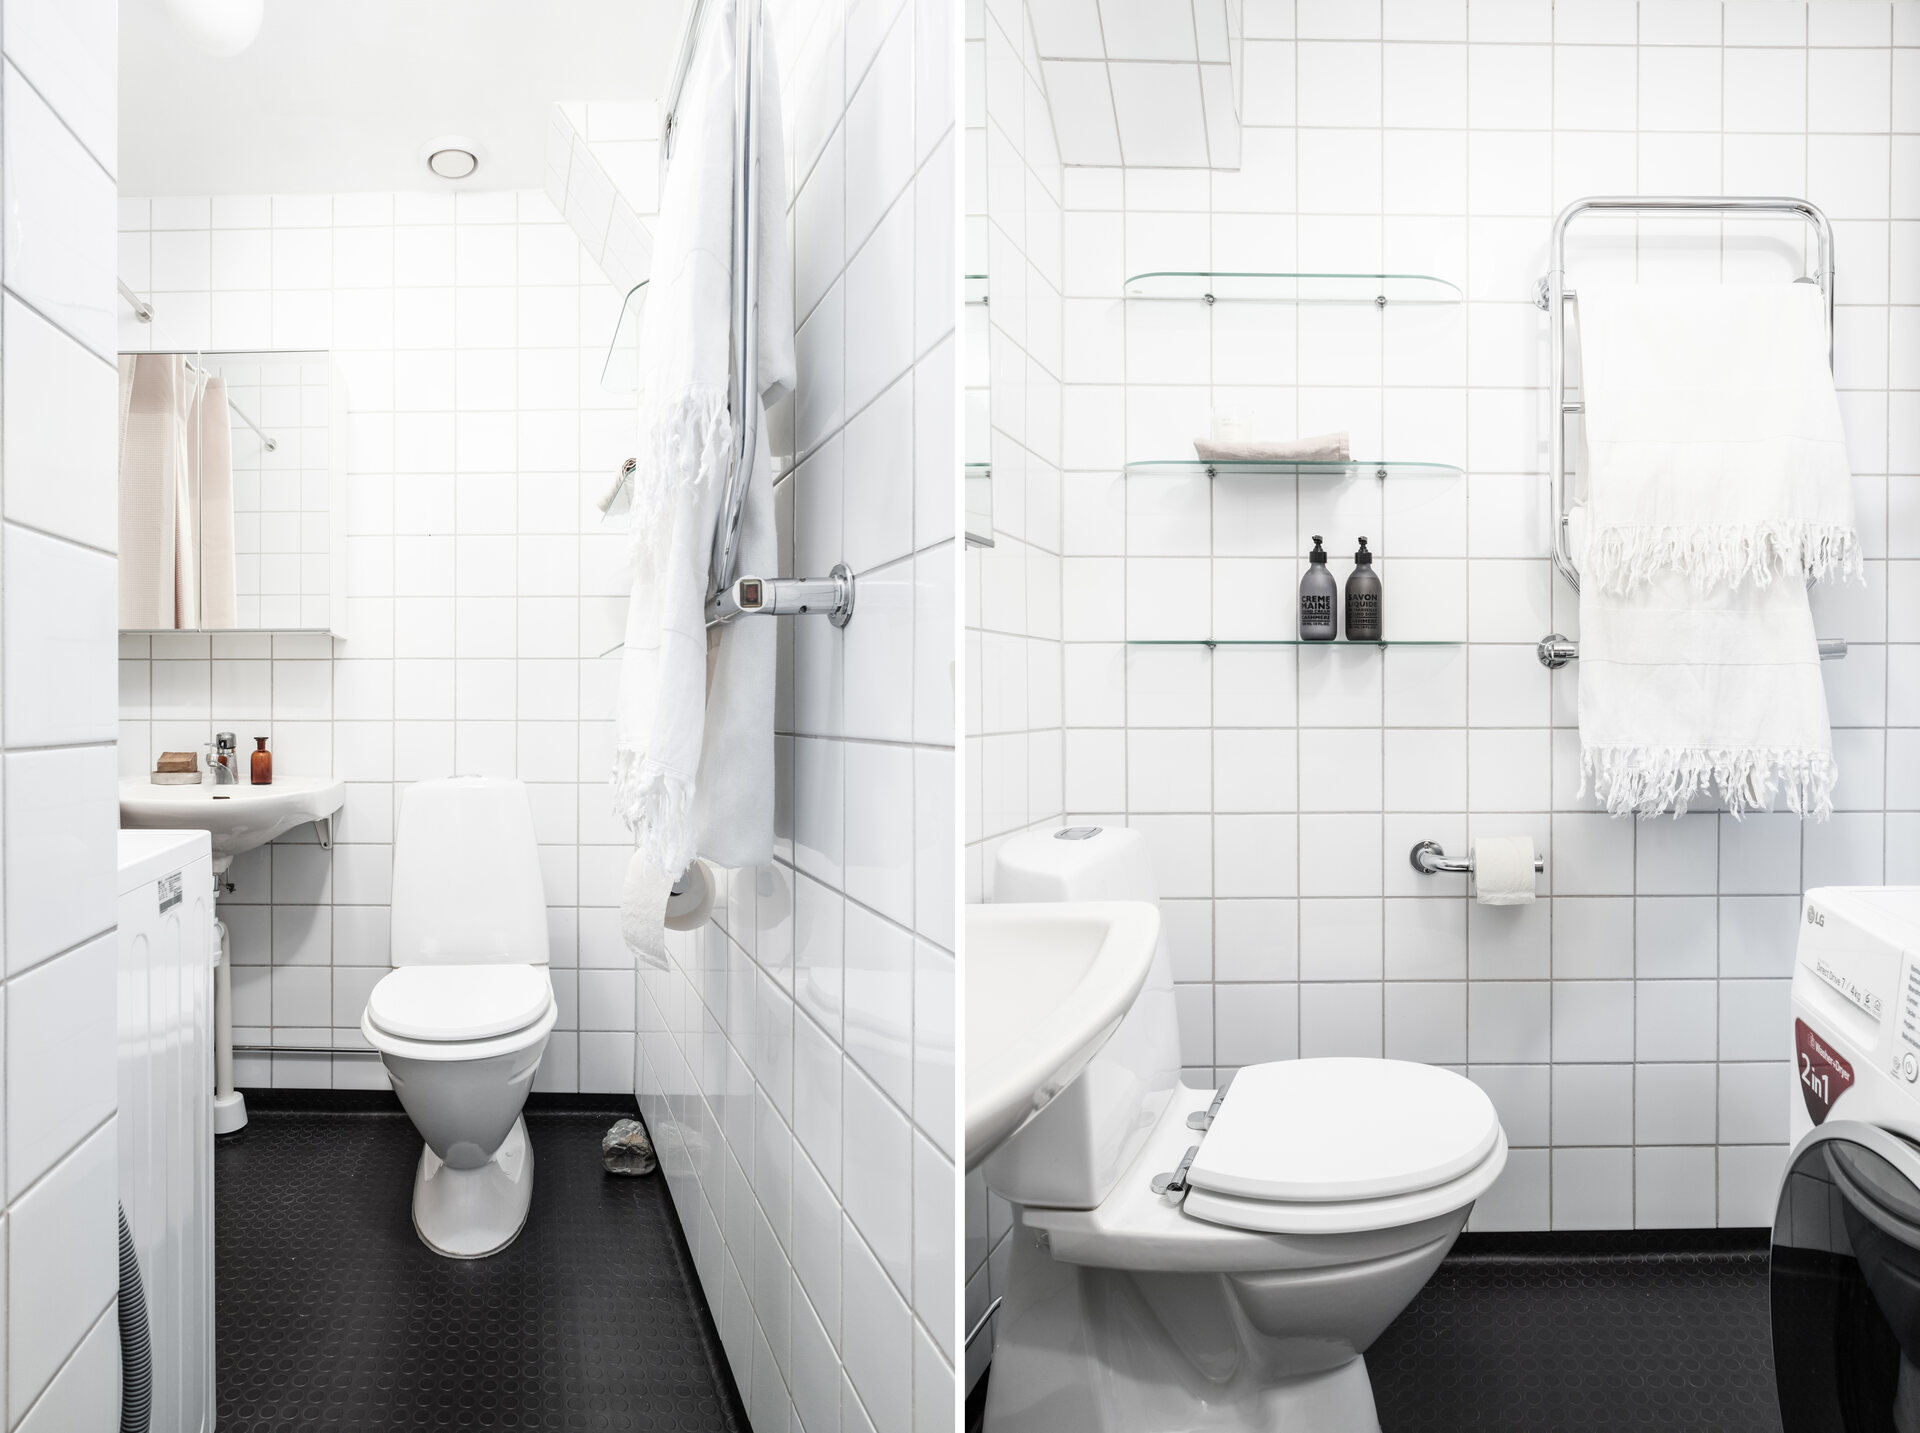 Và cuối cùng, chúng ta sẽ tham quan phòng tắm và nhà vệ sinh với tường ốp gạch ô vuông màu trắng sạch sẽ, tương phản với sàn nhà lát gạch đen. Những chiếc kệ mở trong suốt và kệ inox treo khăn tắm, cuộn giấy vệ sinh cho không gian luôn gọn gàng.